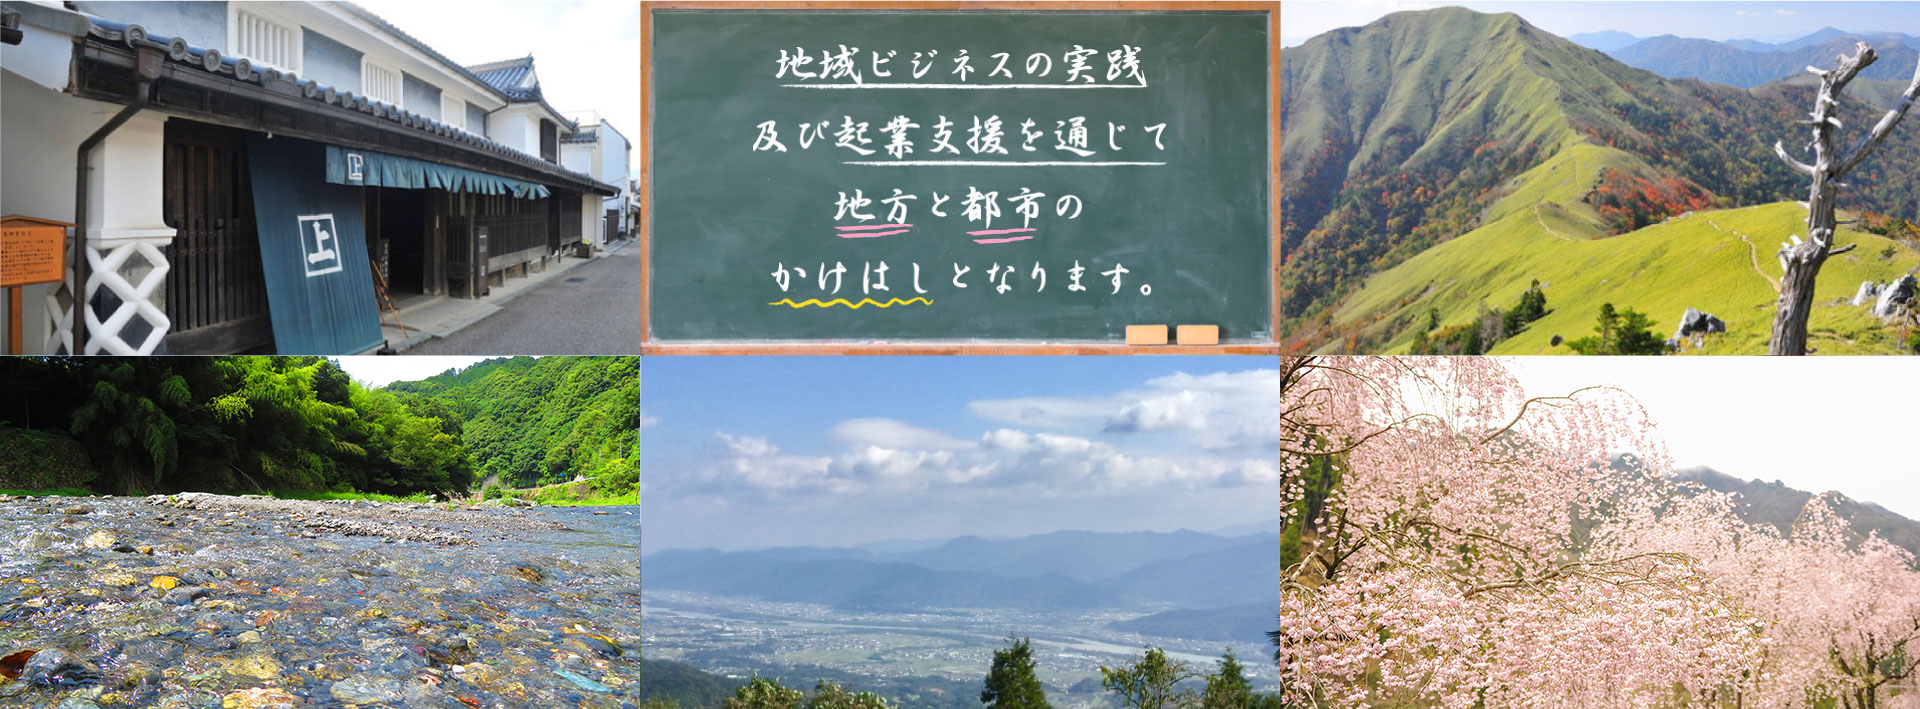 2月25日（火）から２泊3日で中国地方（岡山、鳥取）へ新商品発掘などを目的に道の駅など視察しました。